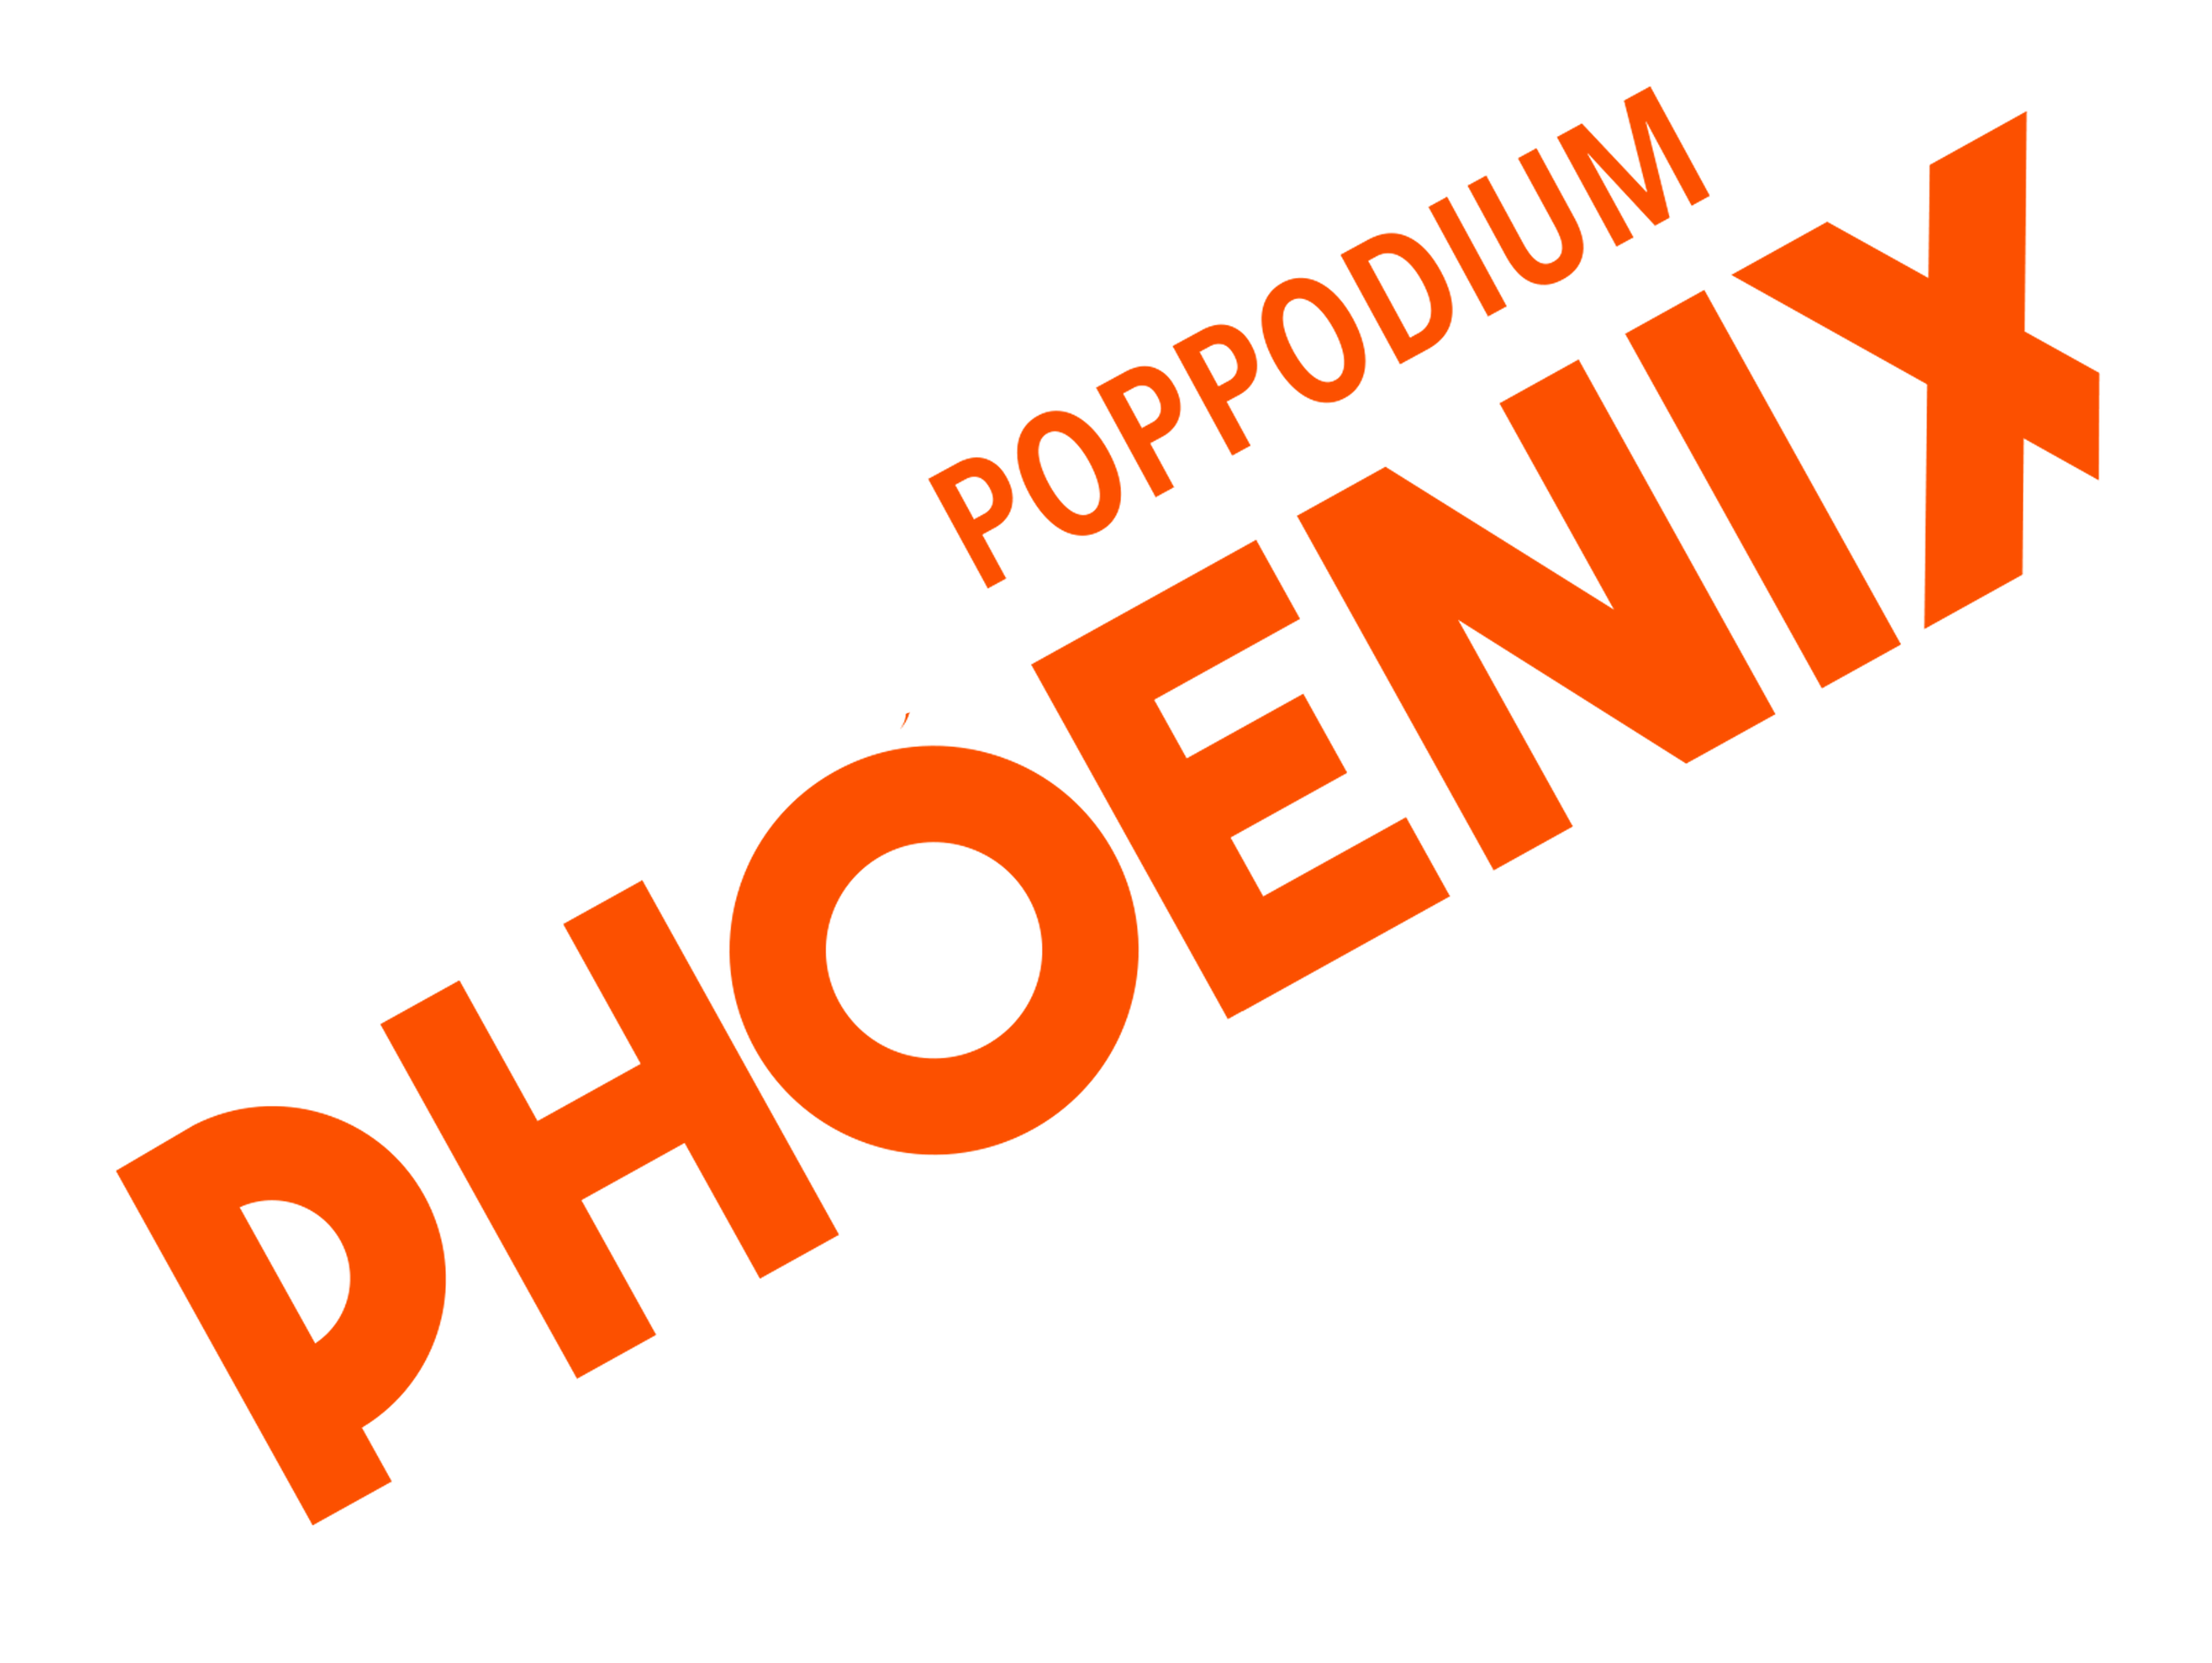 Poppodium Phoenix